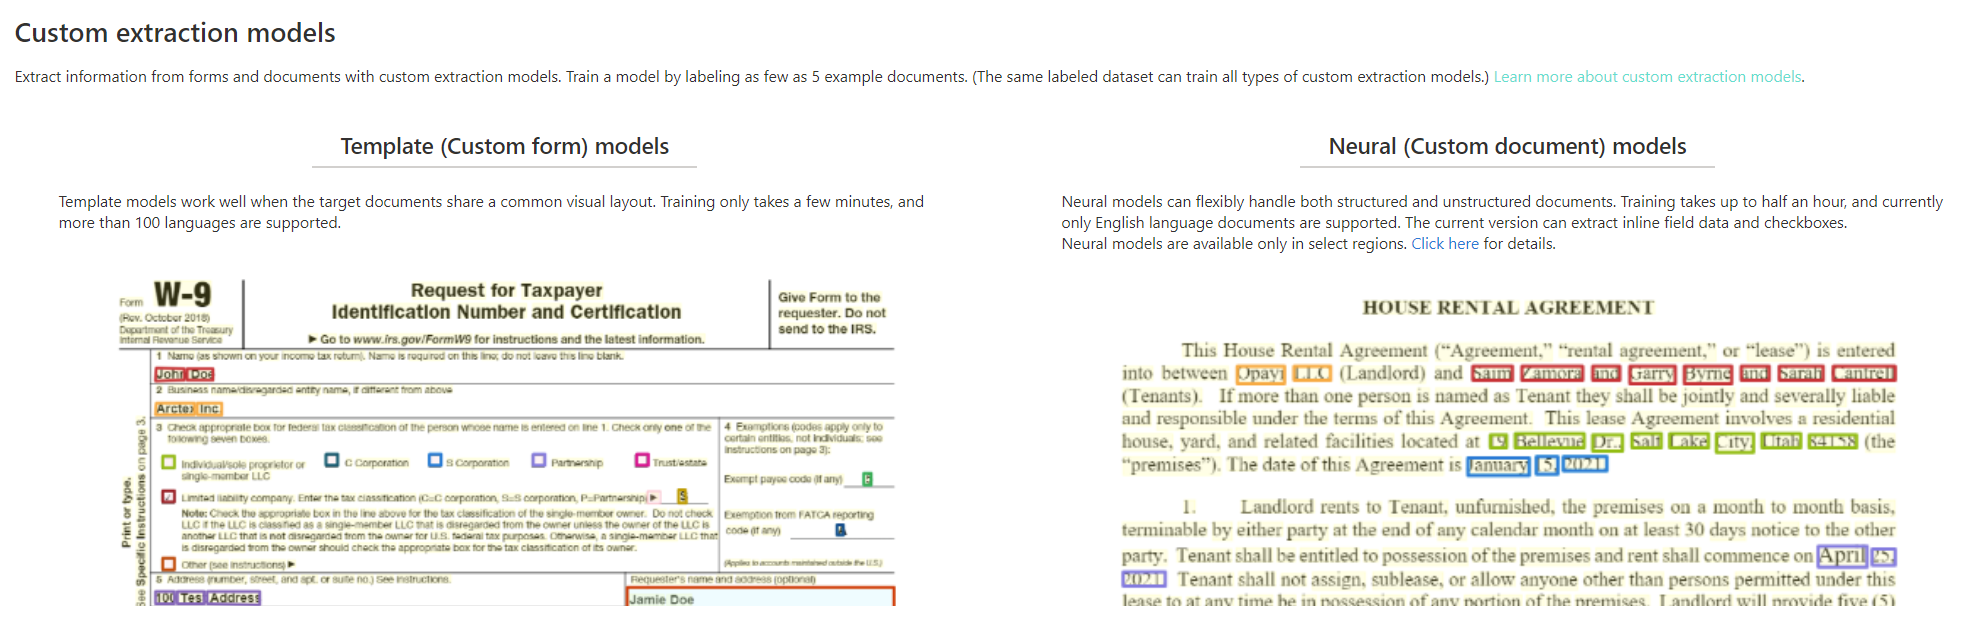 Captura de tela da análise de modelo de extração personalizada no Estúdio de Informação de Documentos.